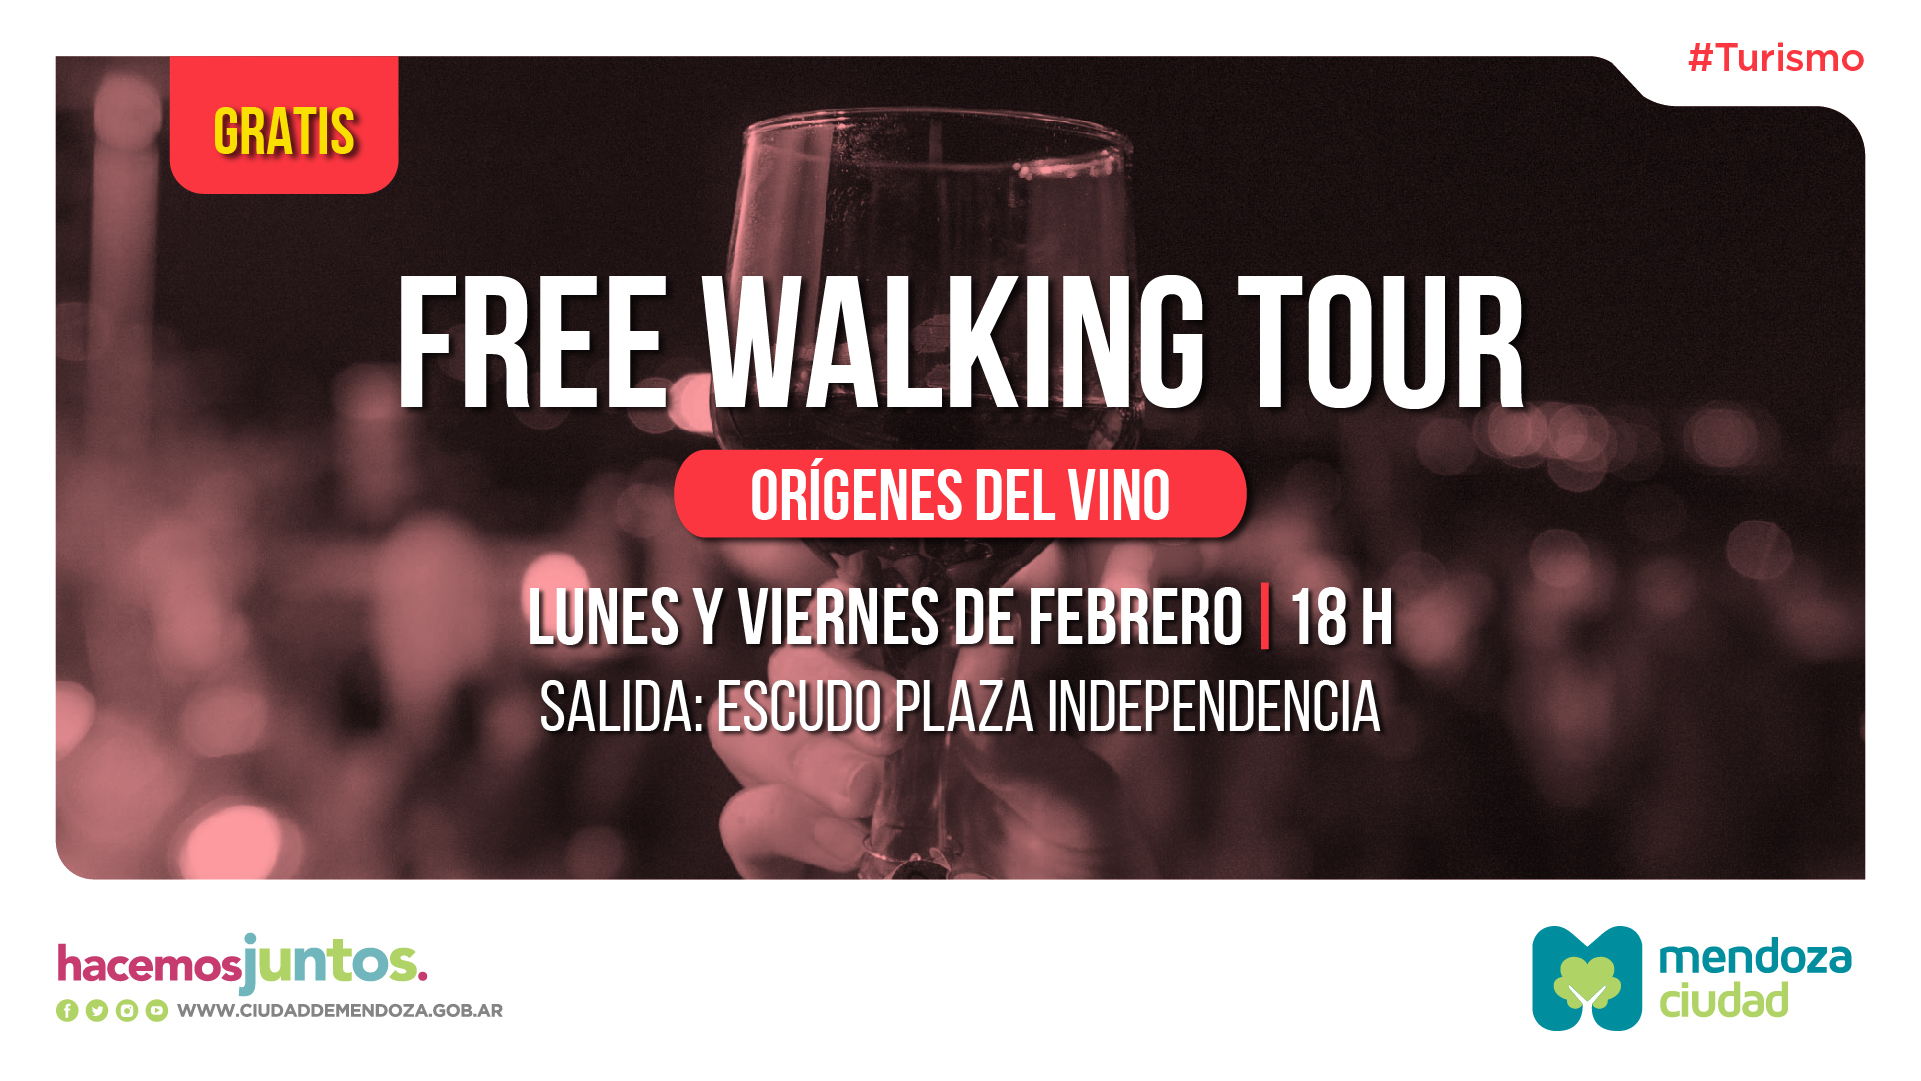 FREE WALKING TOUR TT